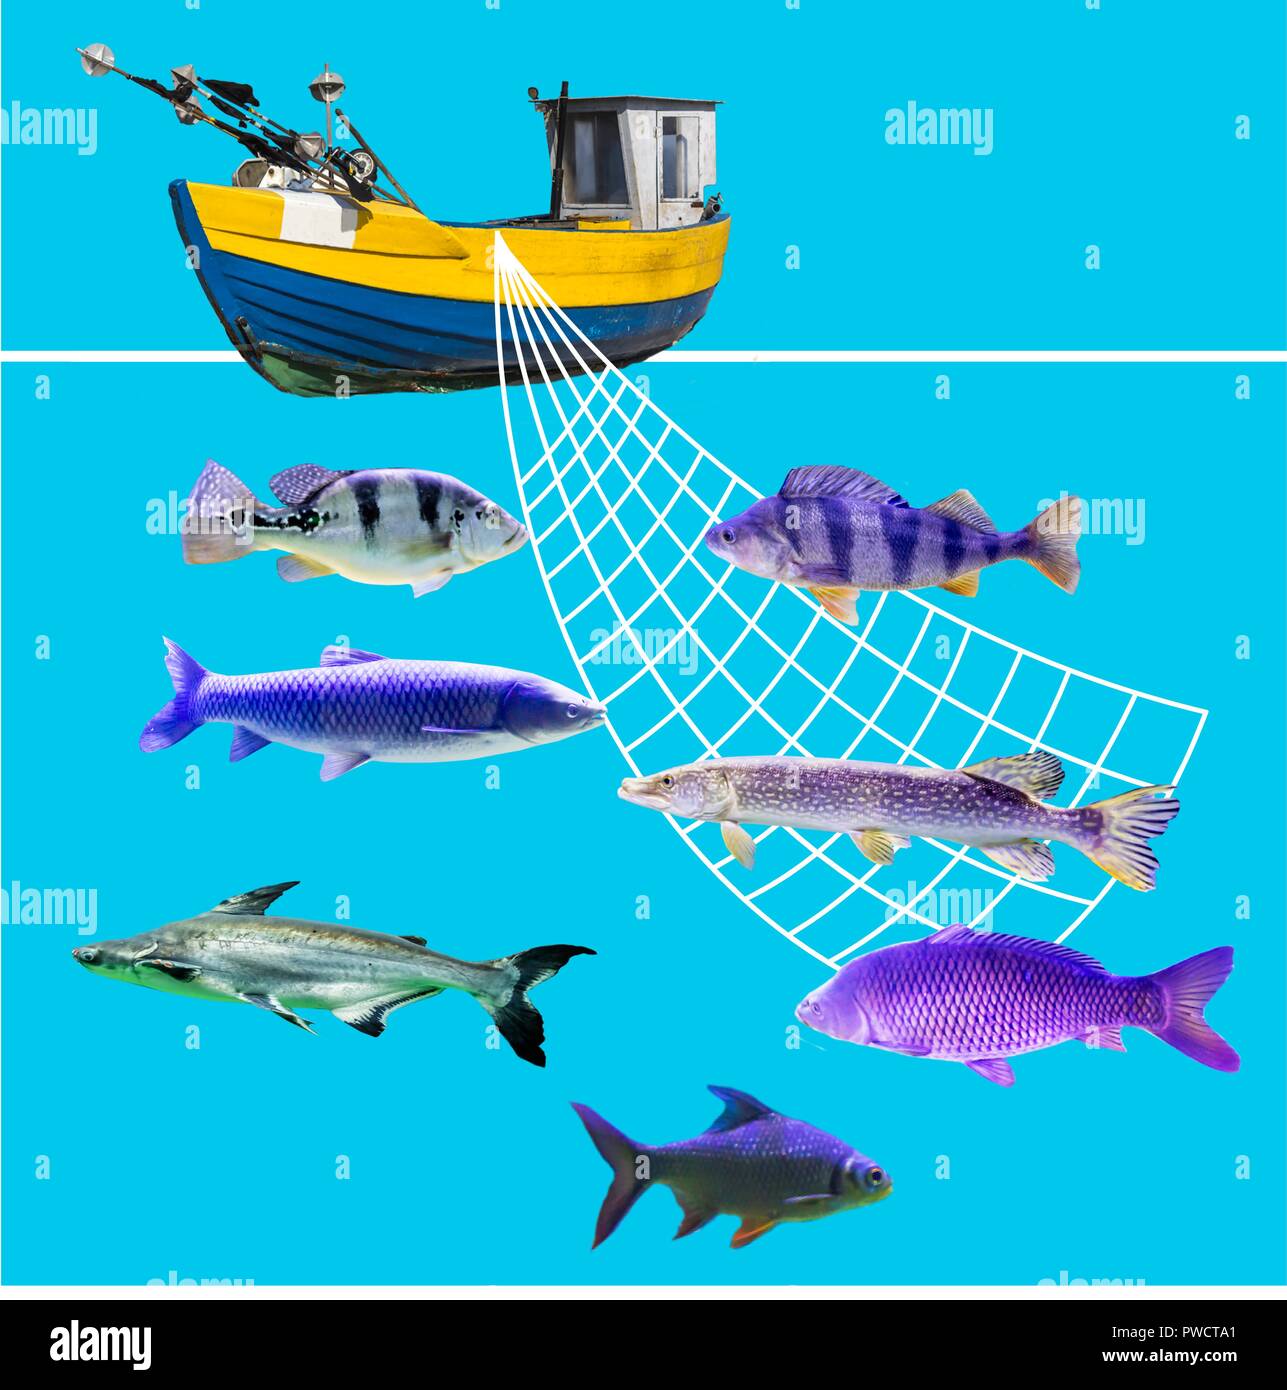 Concetto nautico con rete da pesca decorativa, barca in legno e pagaie.  Luogo all'aperto in stile marino per scattare foto Foto stock - Alamy